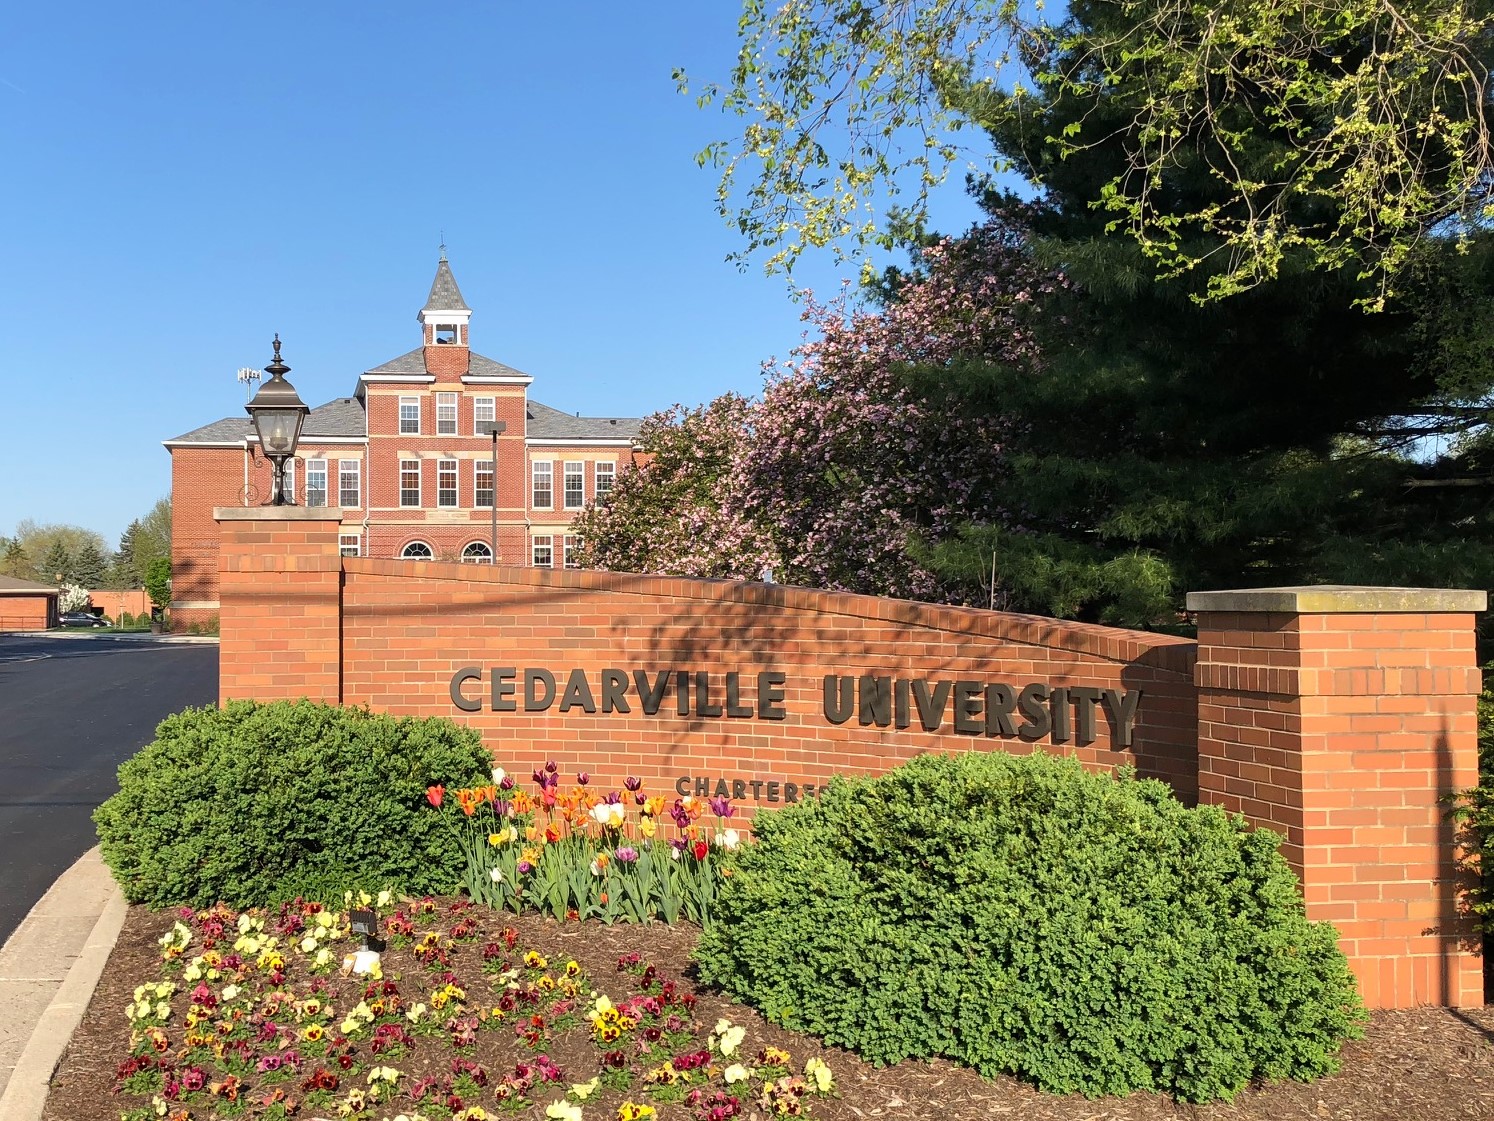 Cedarville University campus